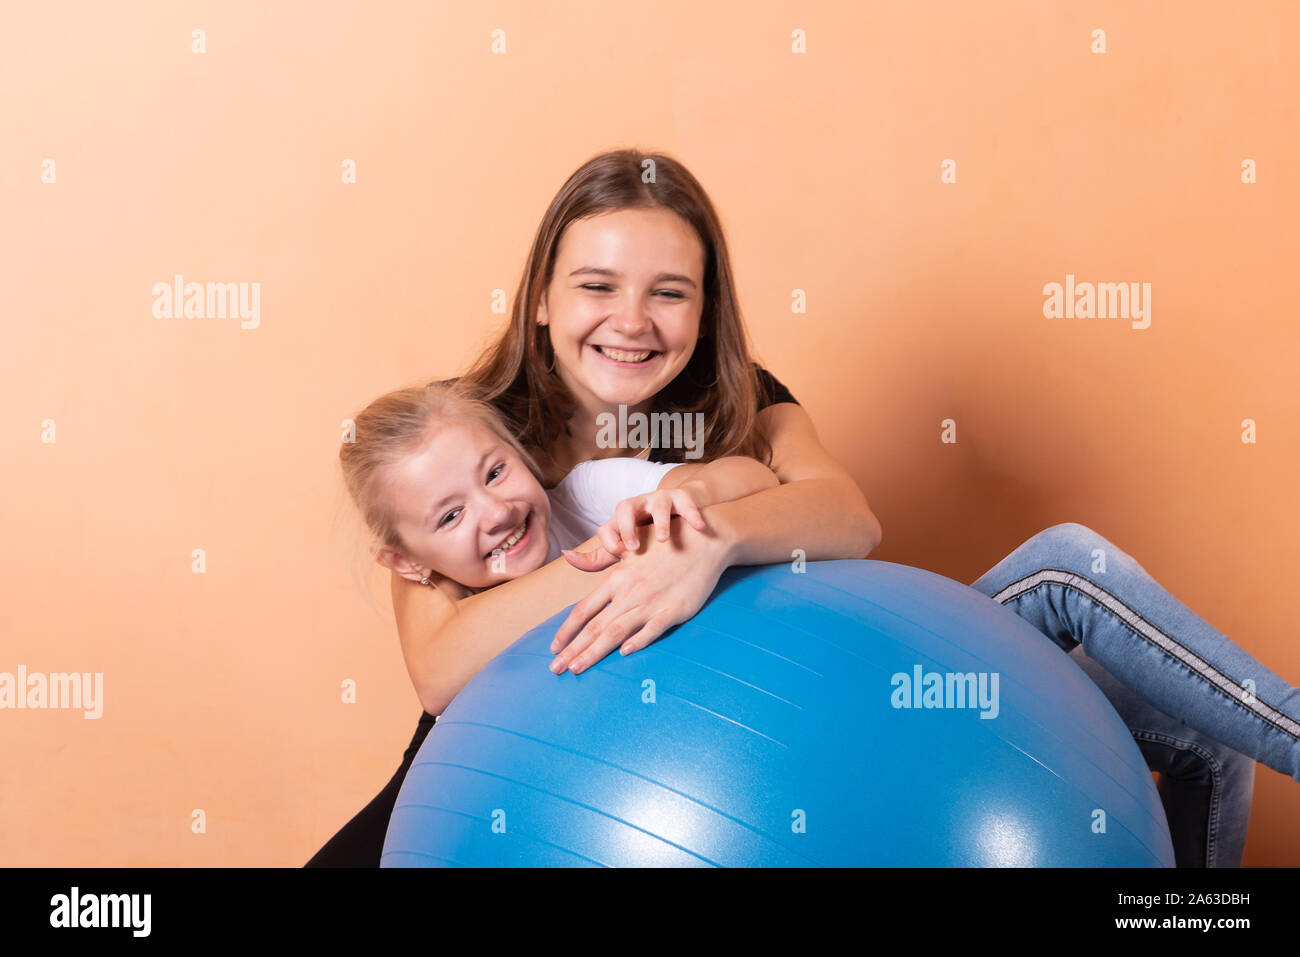 Mädchen auf einem Gymnastikball, auf einem hellen orange hinterlegt. Stockfoto